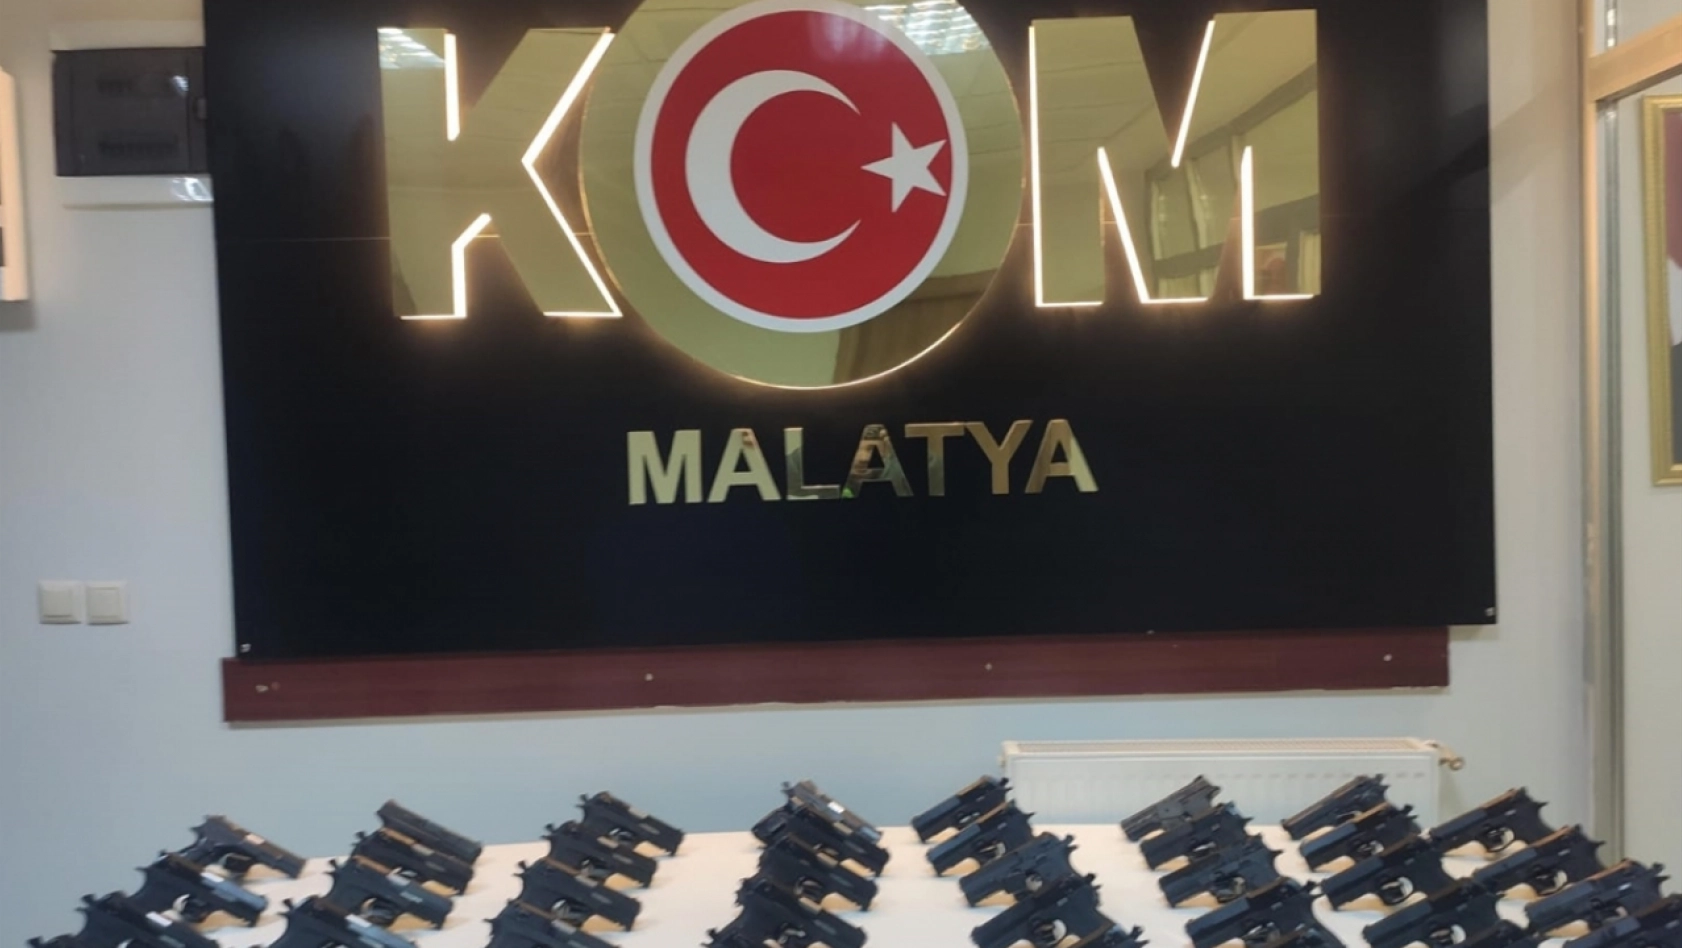 Malatya'da 38 tabanca ele geçirildi, 3 şüpheli gözaltına alındı